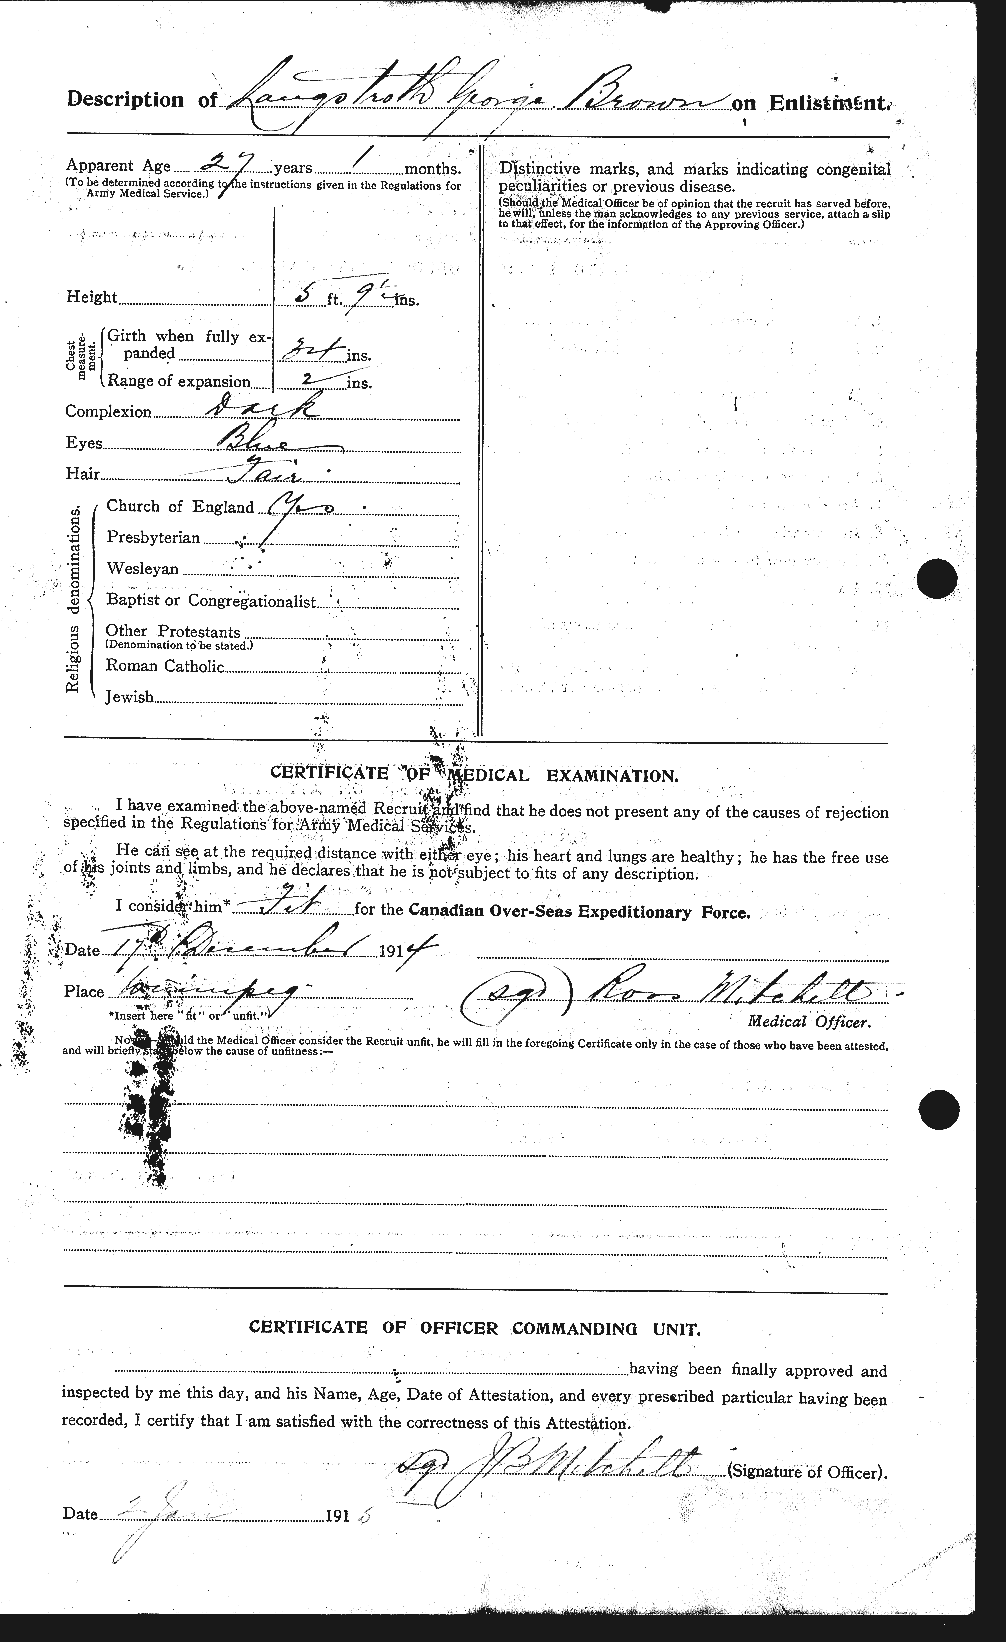 Dossiers du Personnel de la Première Guerre mondiale - CEC 266254b